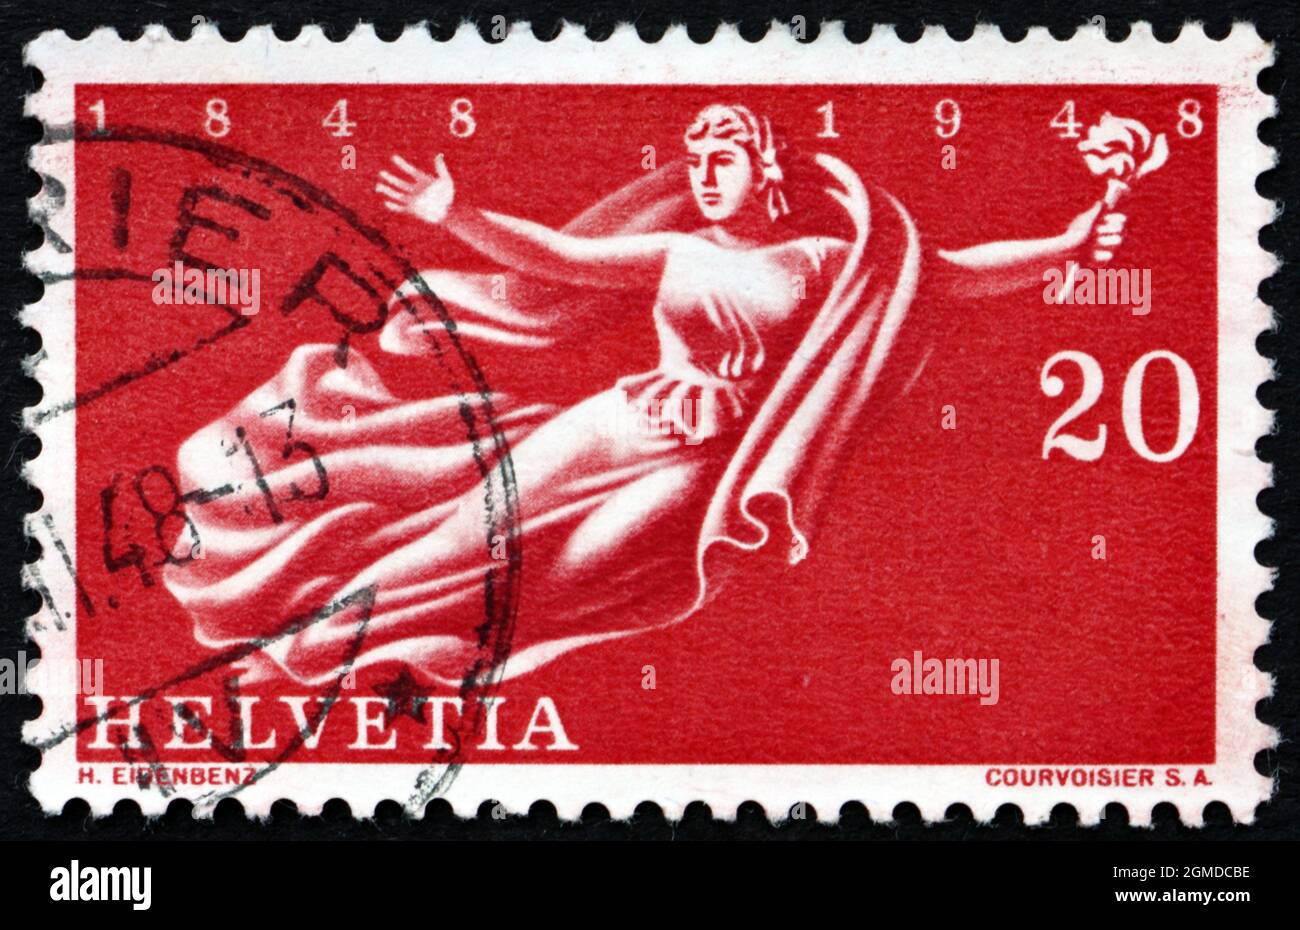 SVIZZERA - CIRCA 1948: Un francobollo stampato in Svizzera mostra Helvetia, Tercentenario, del riconoscimento della Confederazione svizzera, circa 194 Foto Stock